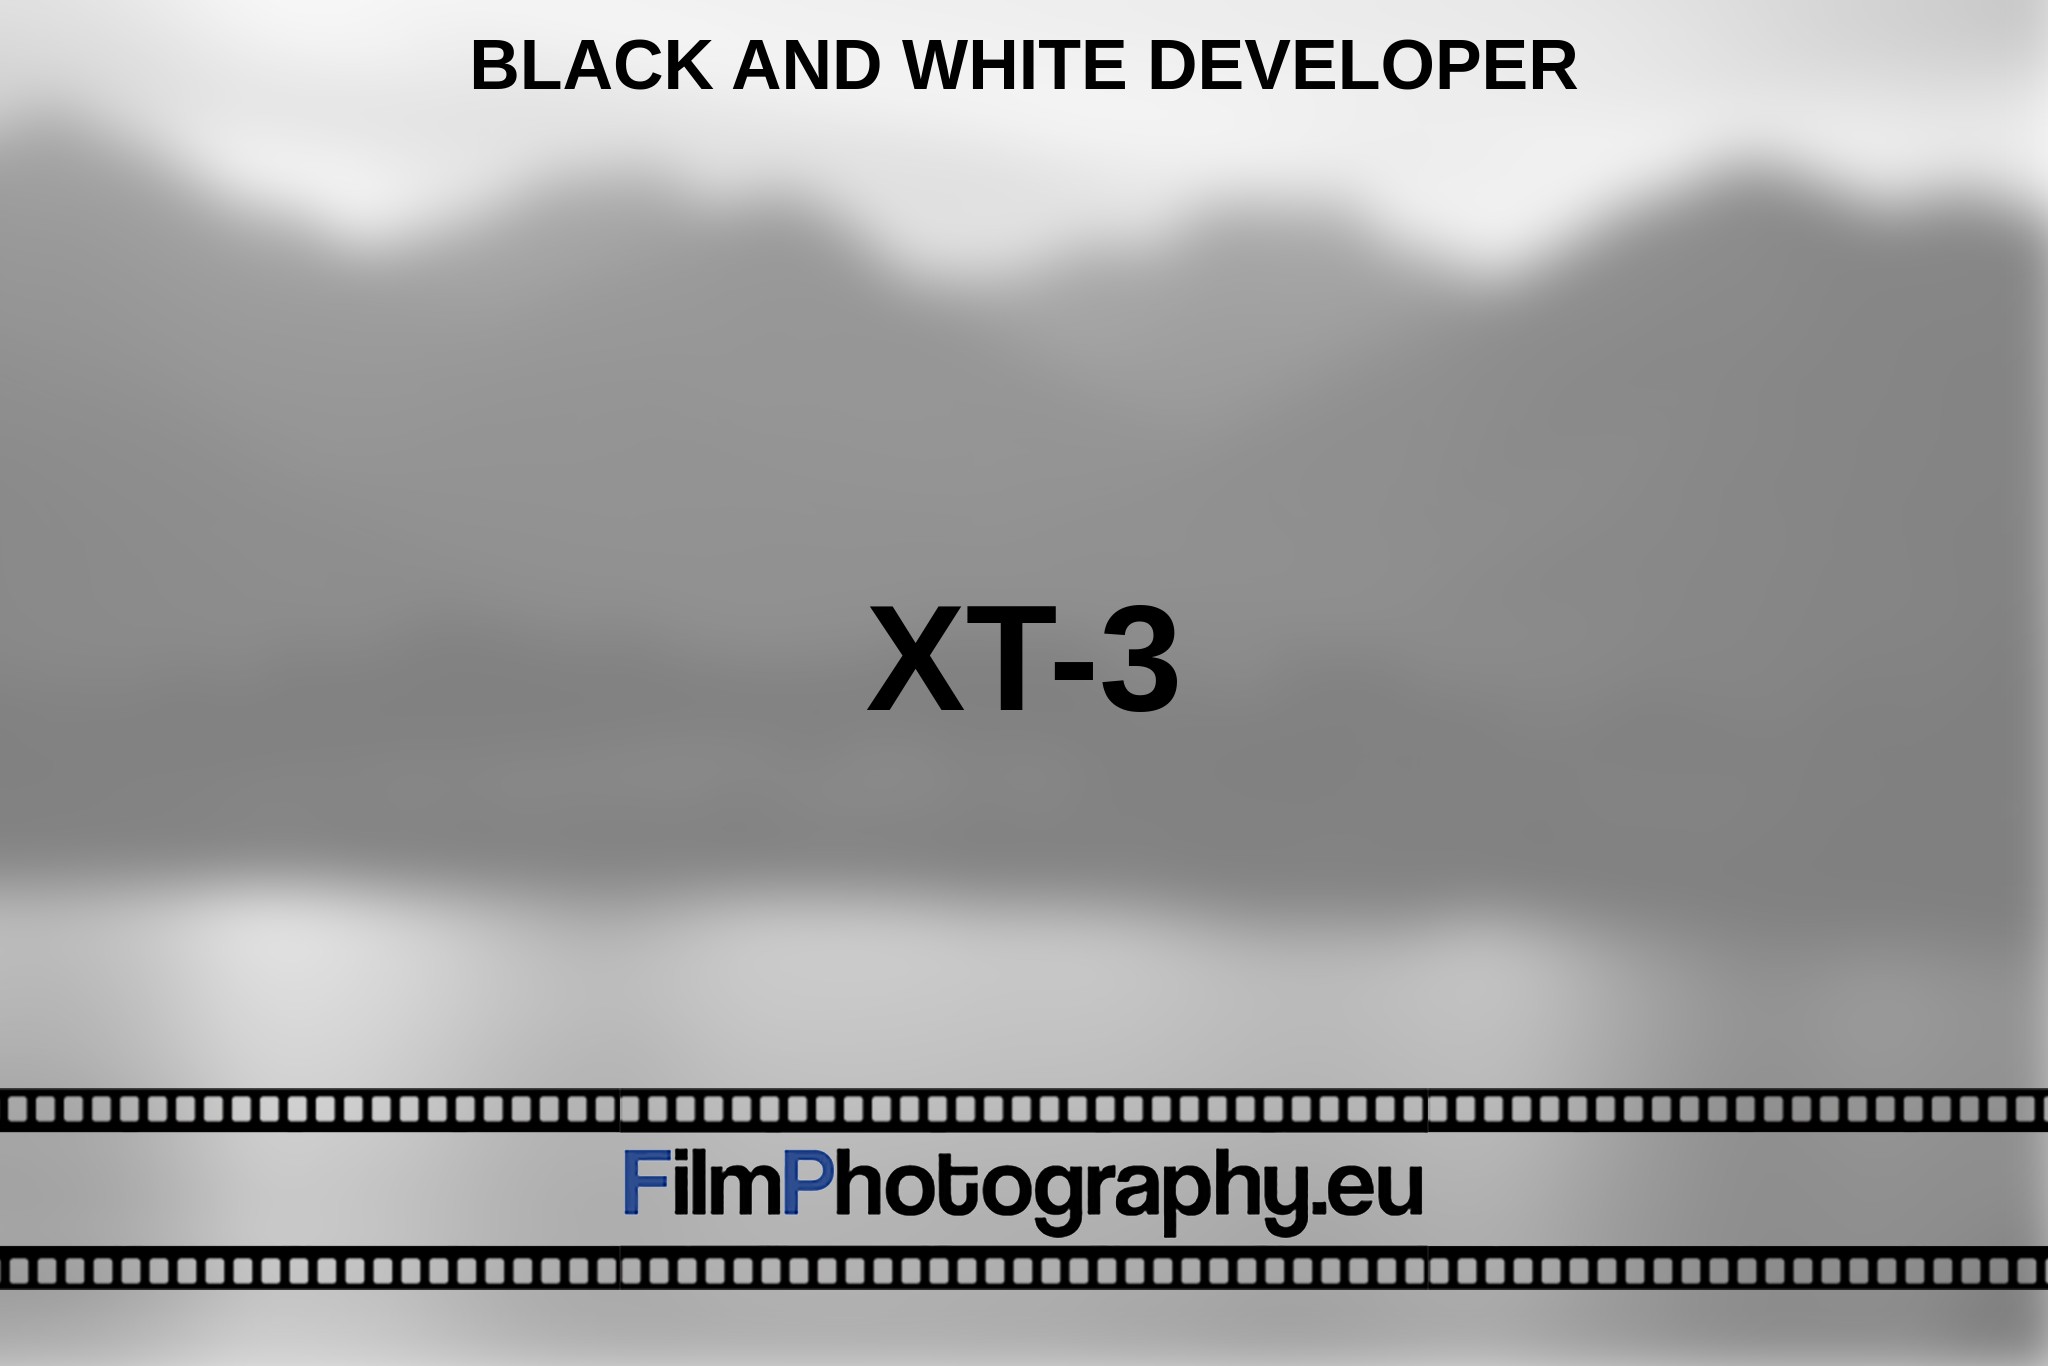 xt-3-black-and-white-developer-en-bnv.jpg